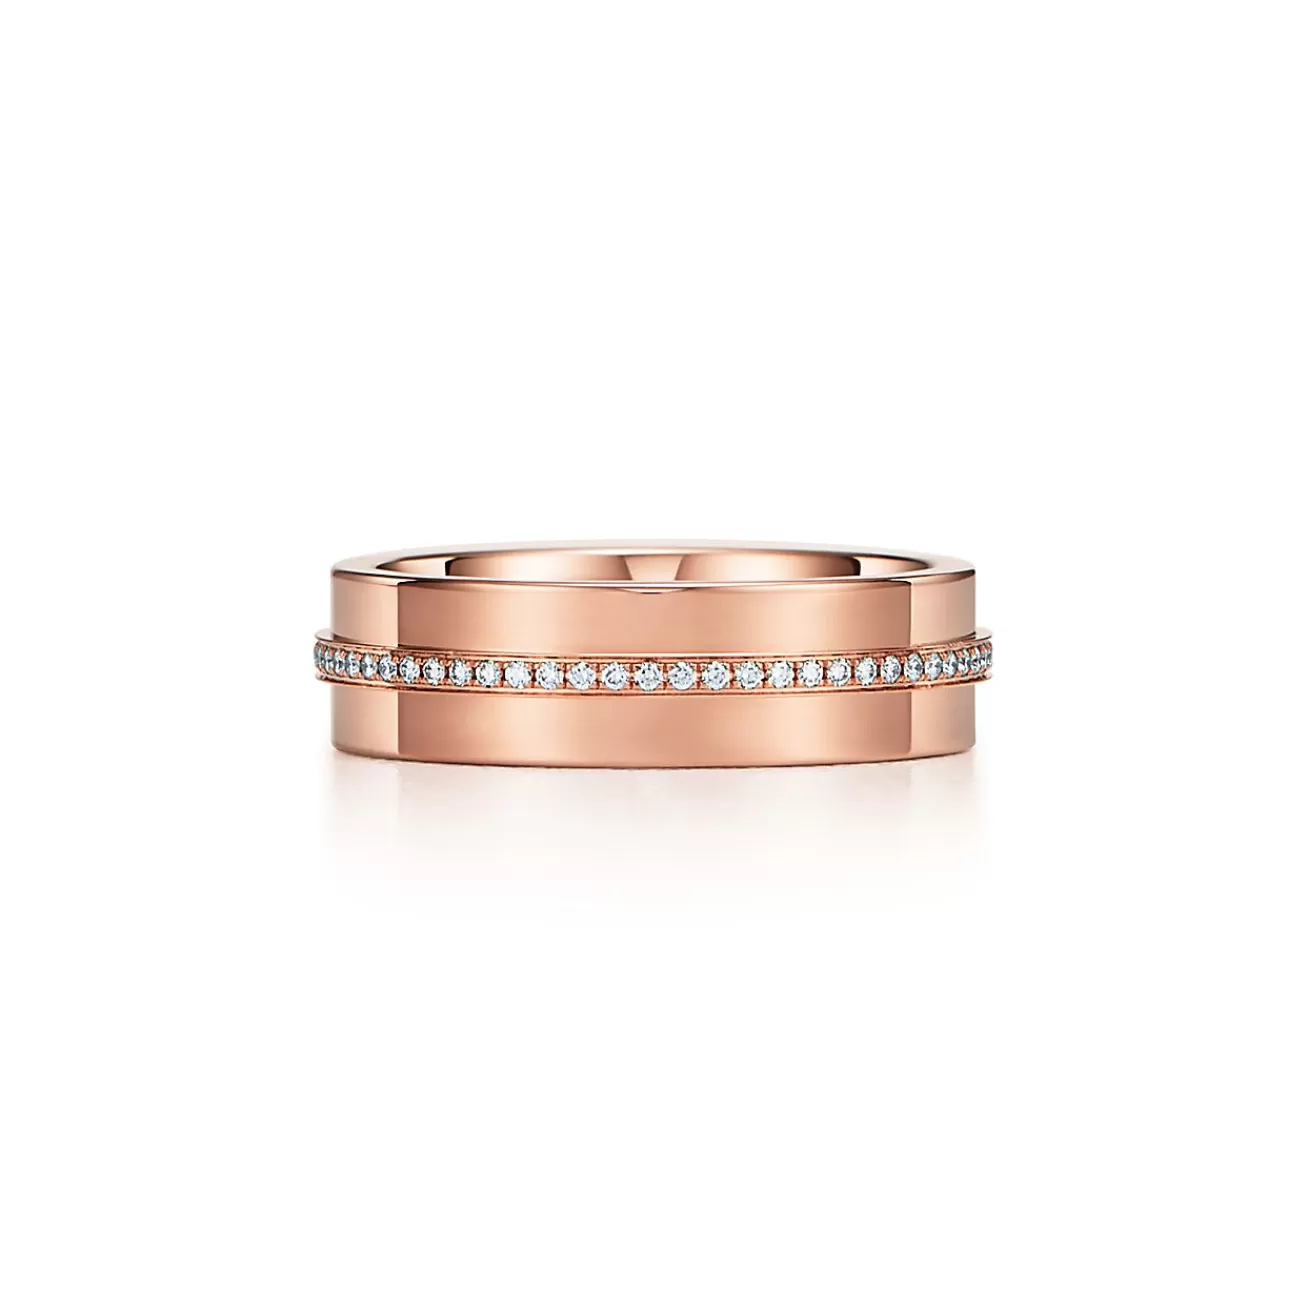 Tiffany & Co. Tiffany T wide diamond ring in 18k rose gold, 5.5 mm wide. | ^Women Rings | Men's Jewelry